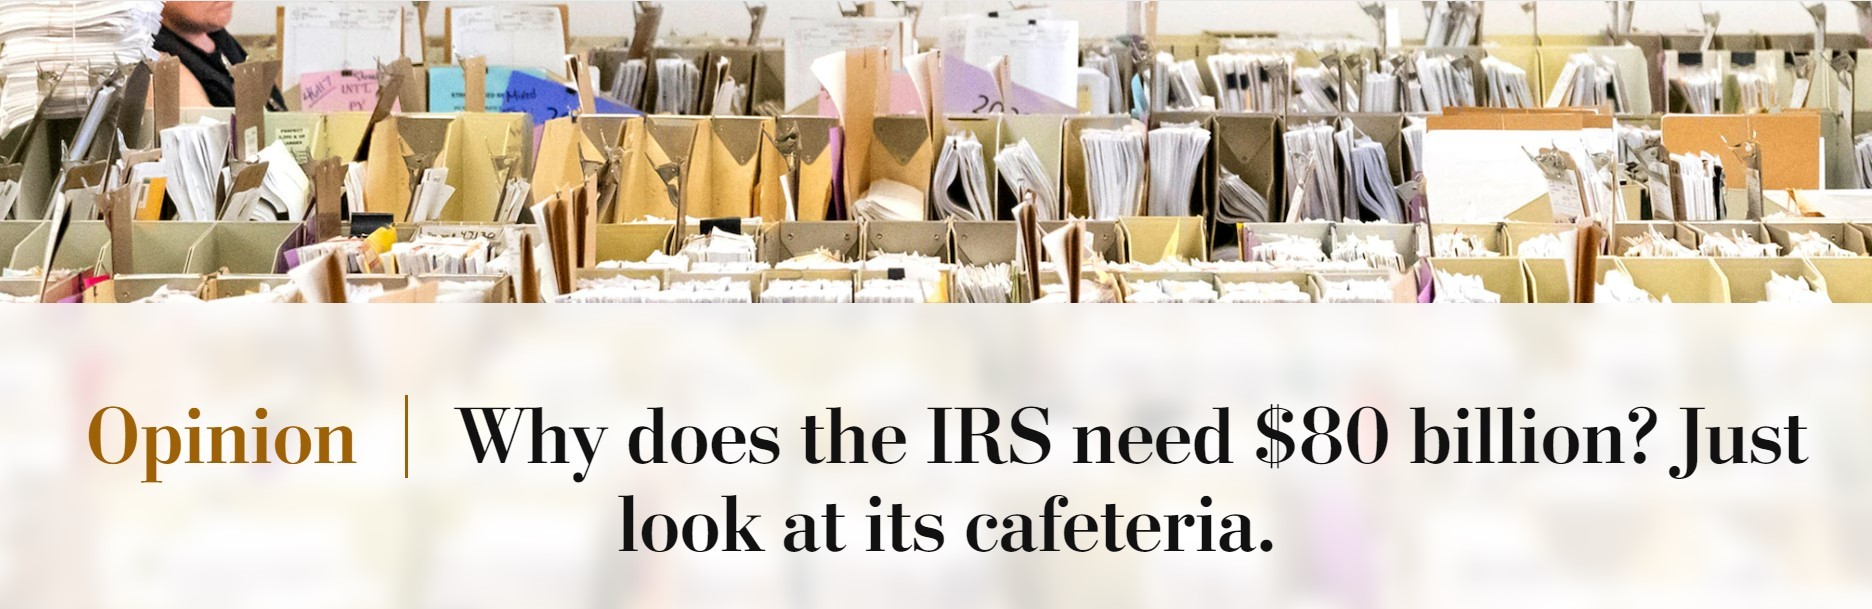 Washington Post IRS Article header